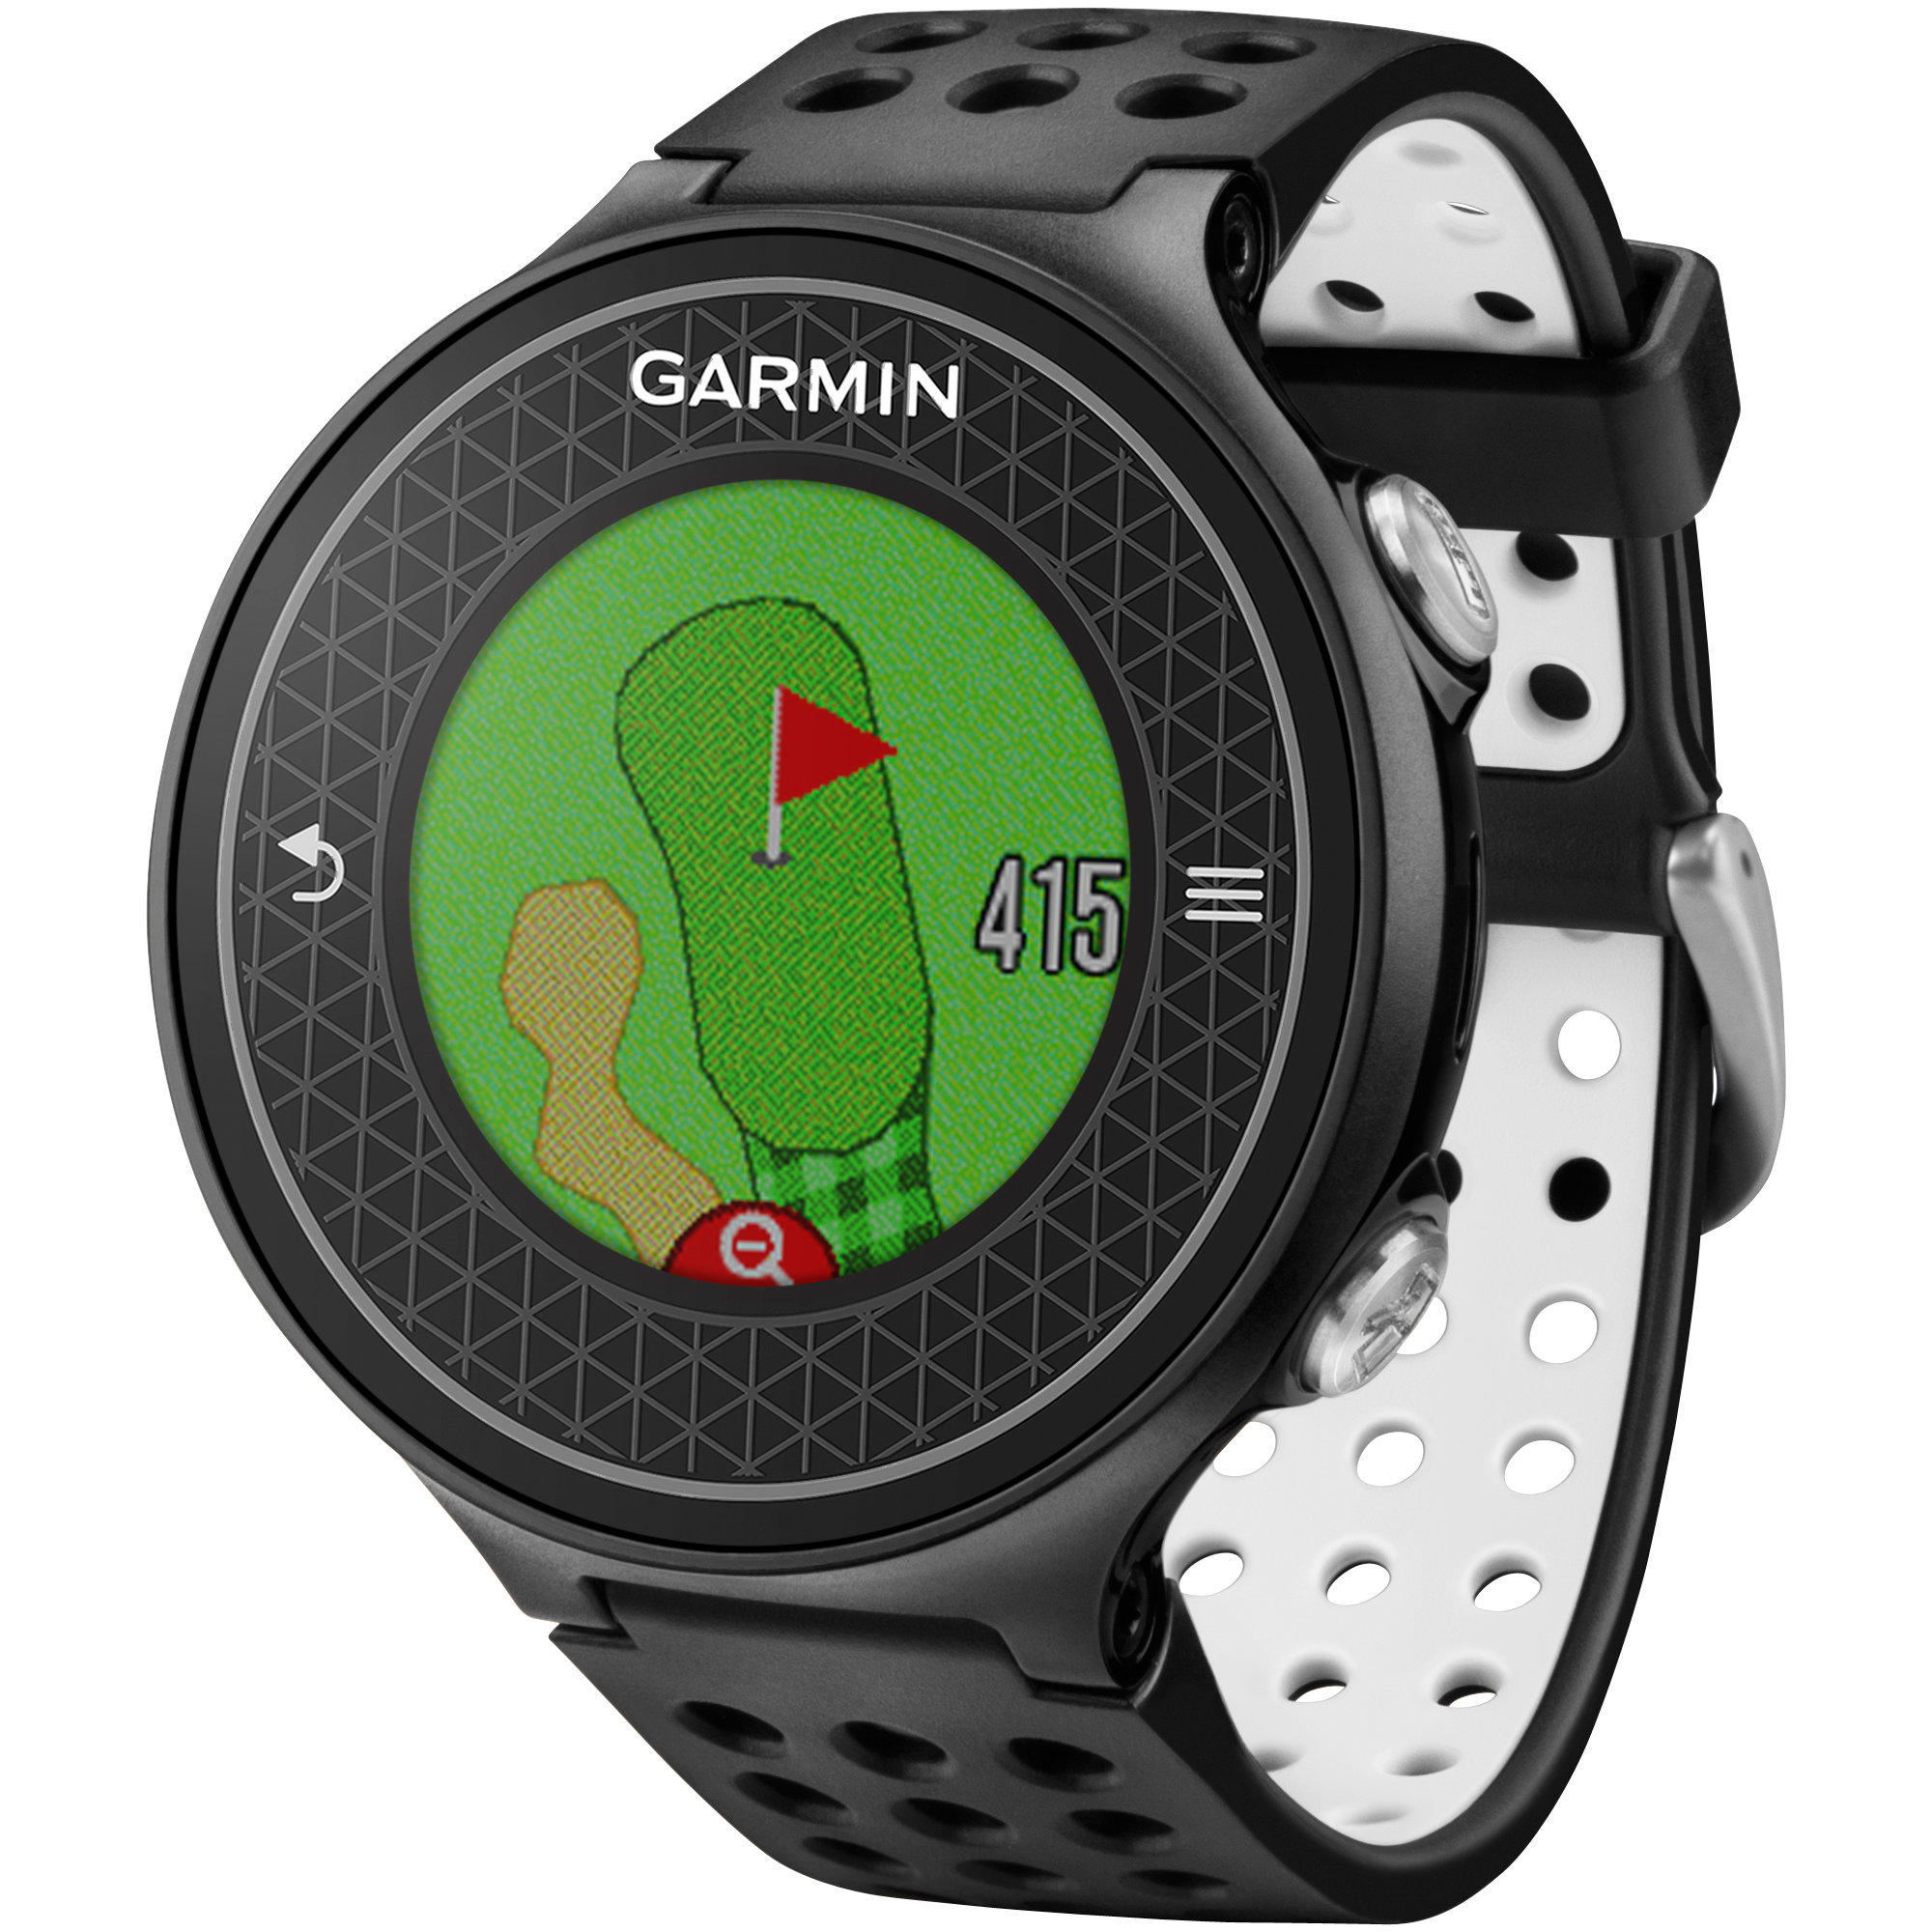 Garmin часы модели. Часы Garmin approach s60. Часы Garmin approach s60 Premium. Гармин 60s. Гармин 6.